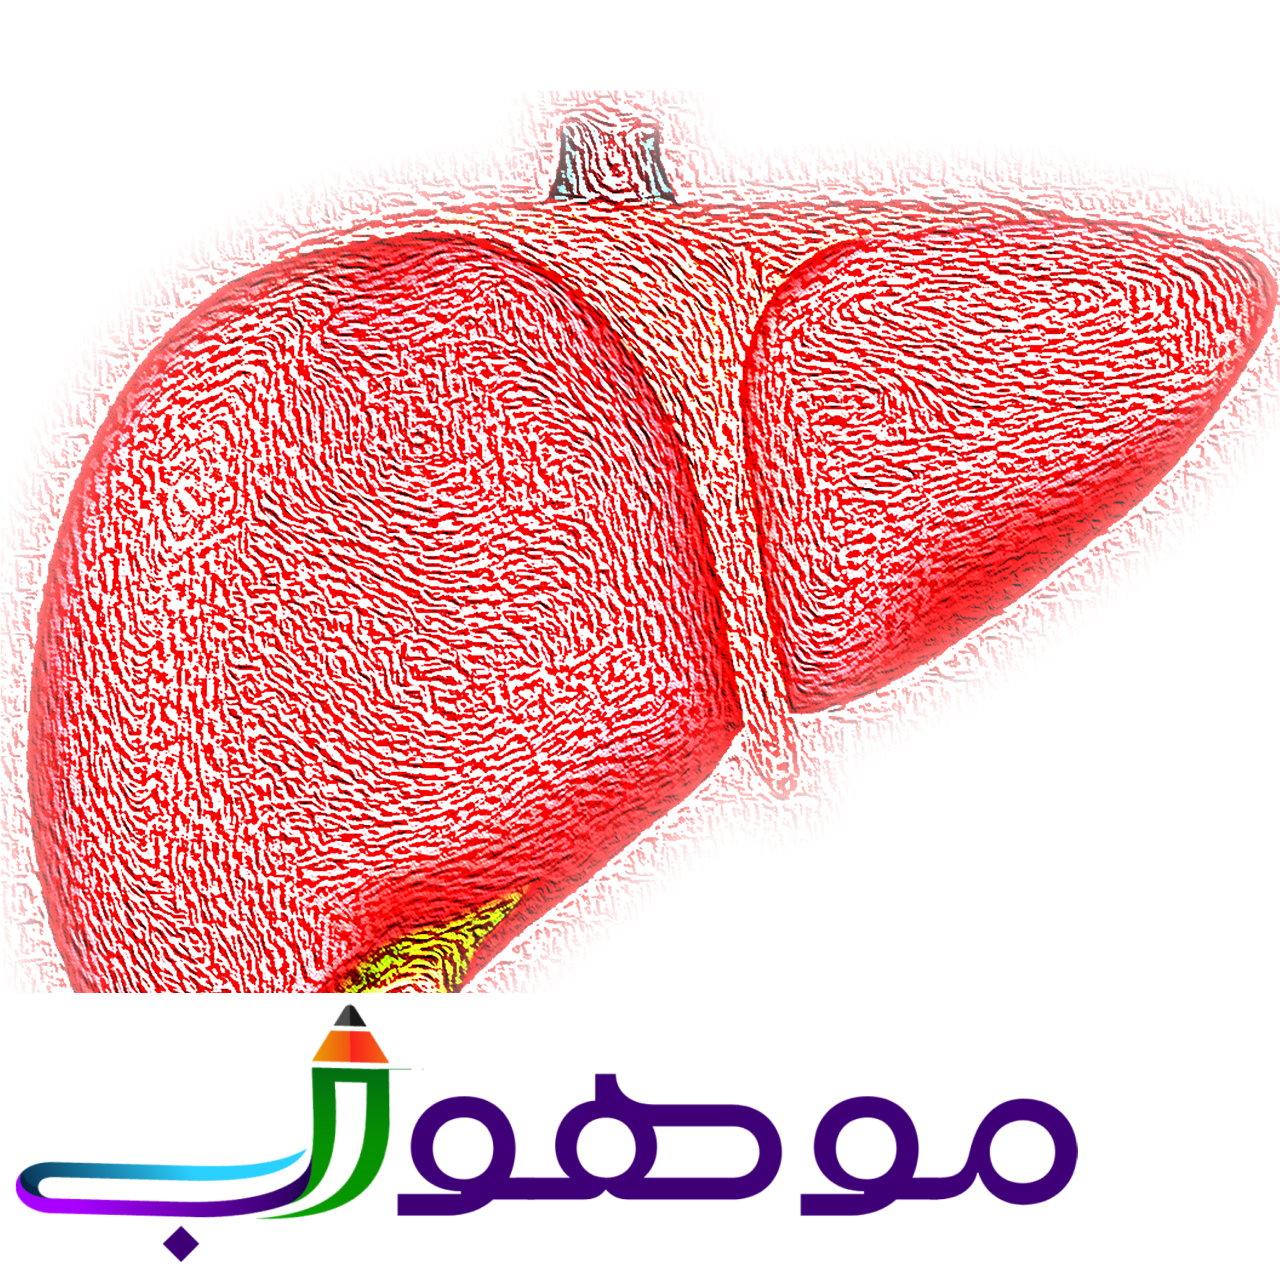 liver, hepatic, organ-4081243.jpg